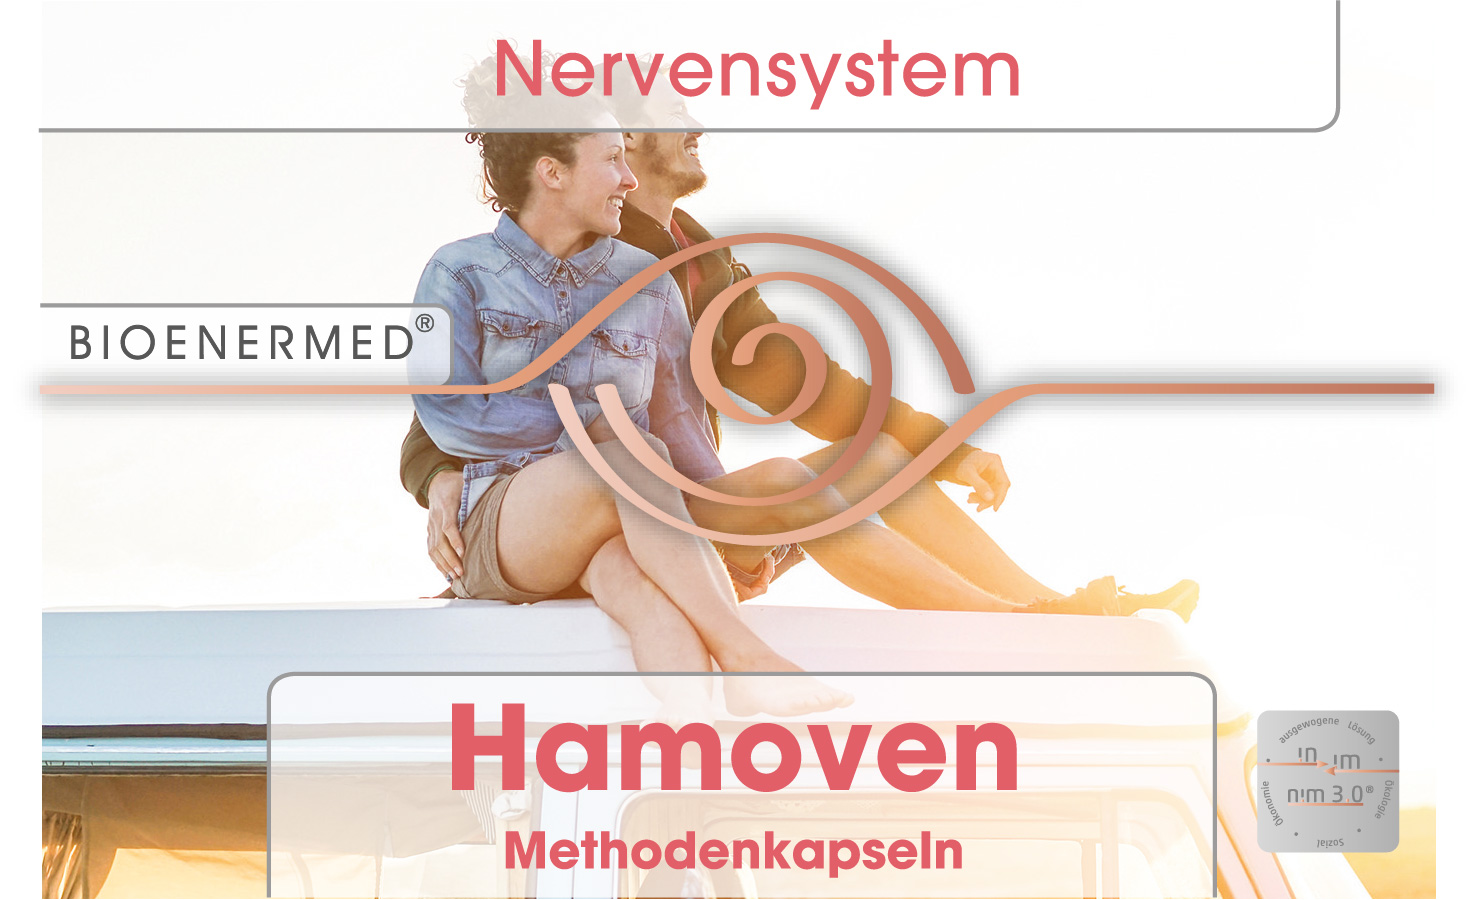 Bioenermed® Hamoven